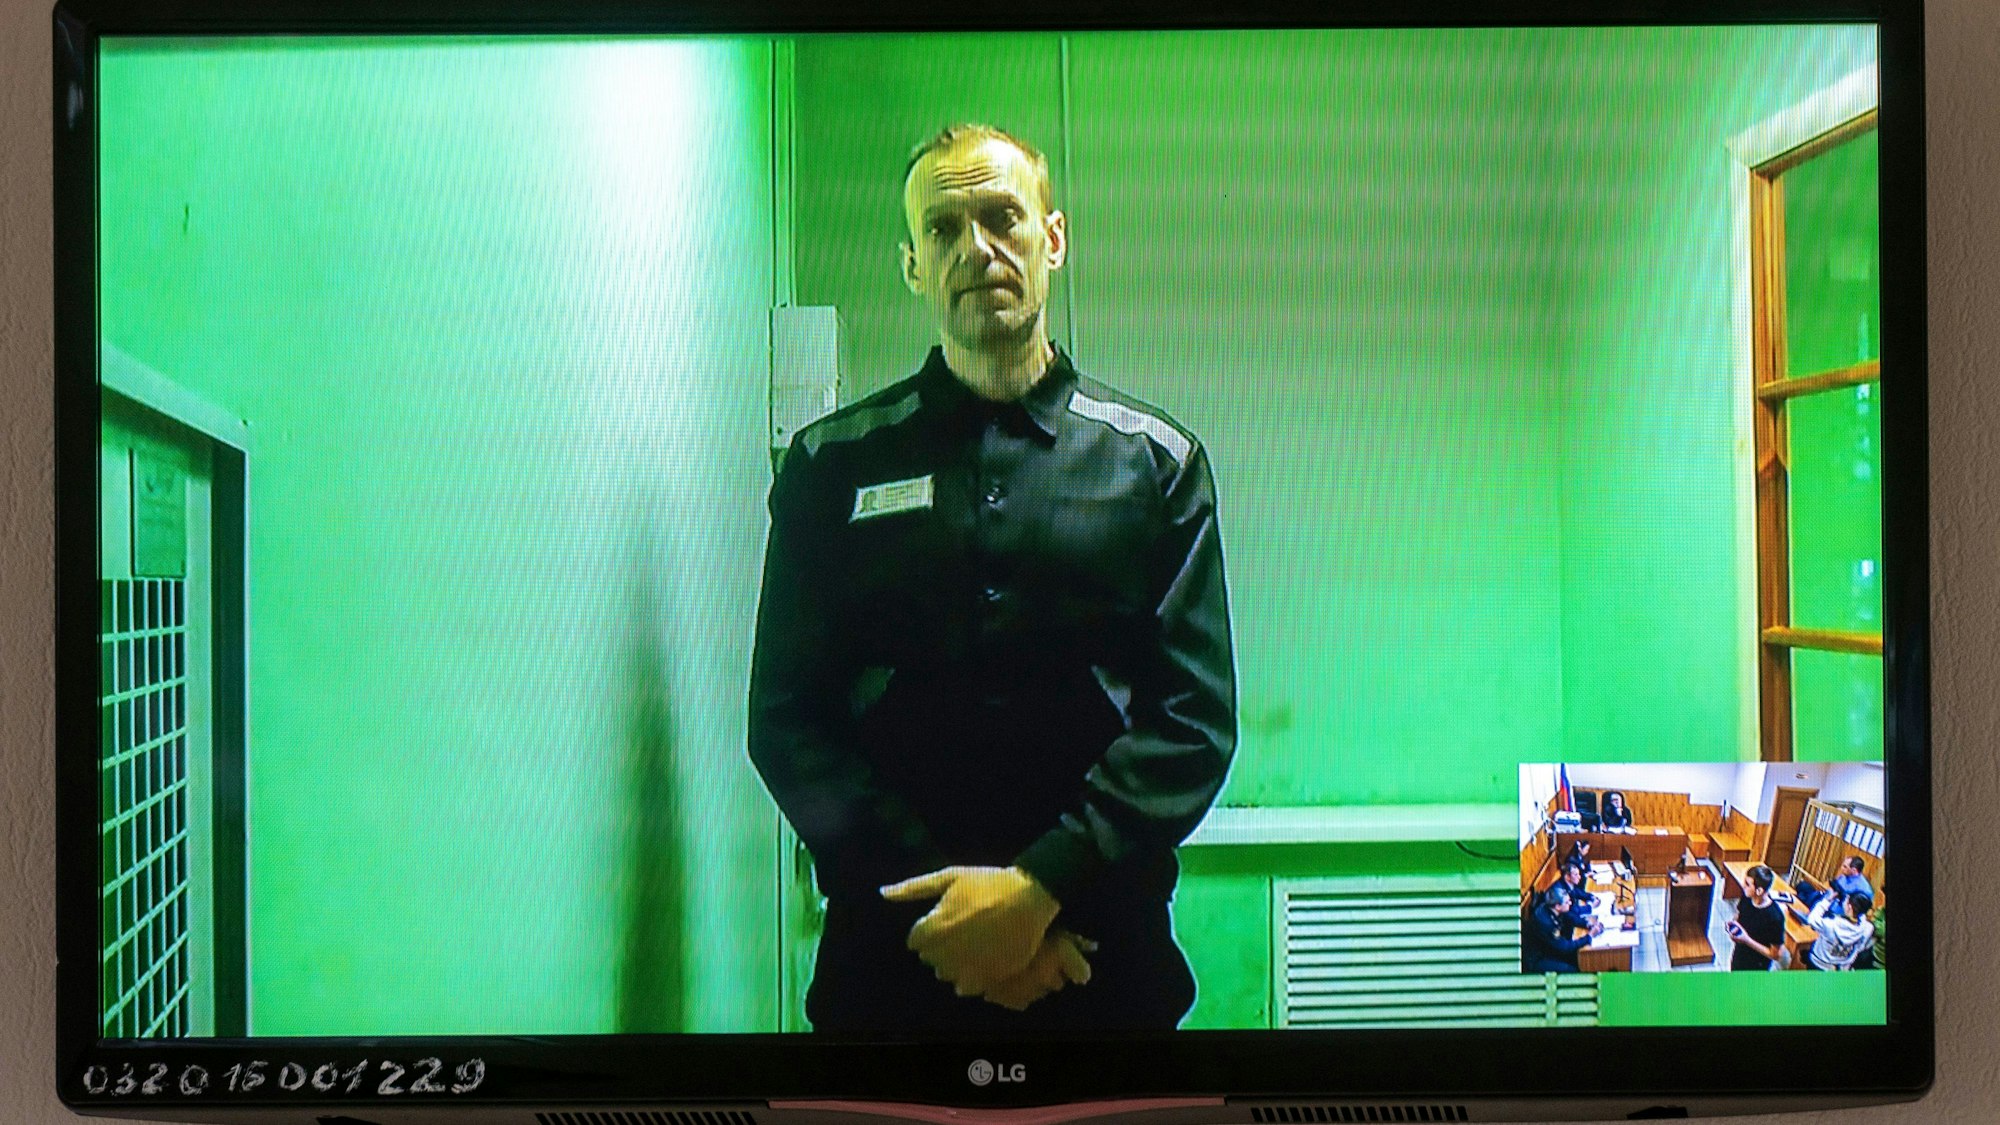 Der russische Oppositionsführer Alexej Nawalny spricht in einer von der russischen Strafvollzugsbehörde bereitgestellten Videoübertragung, aus dem Gefängnis. Ein Foto zeigt einen Fernsehbildschirm, auf dem er zu sehen ist.